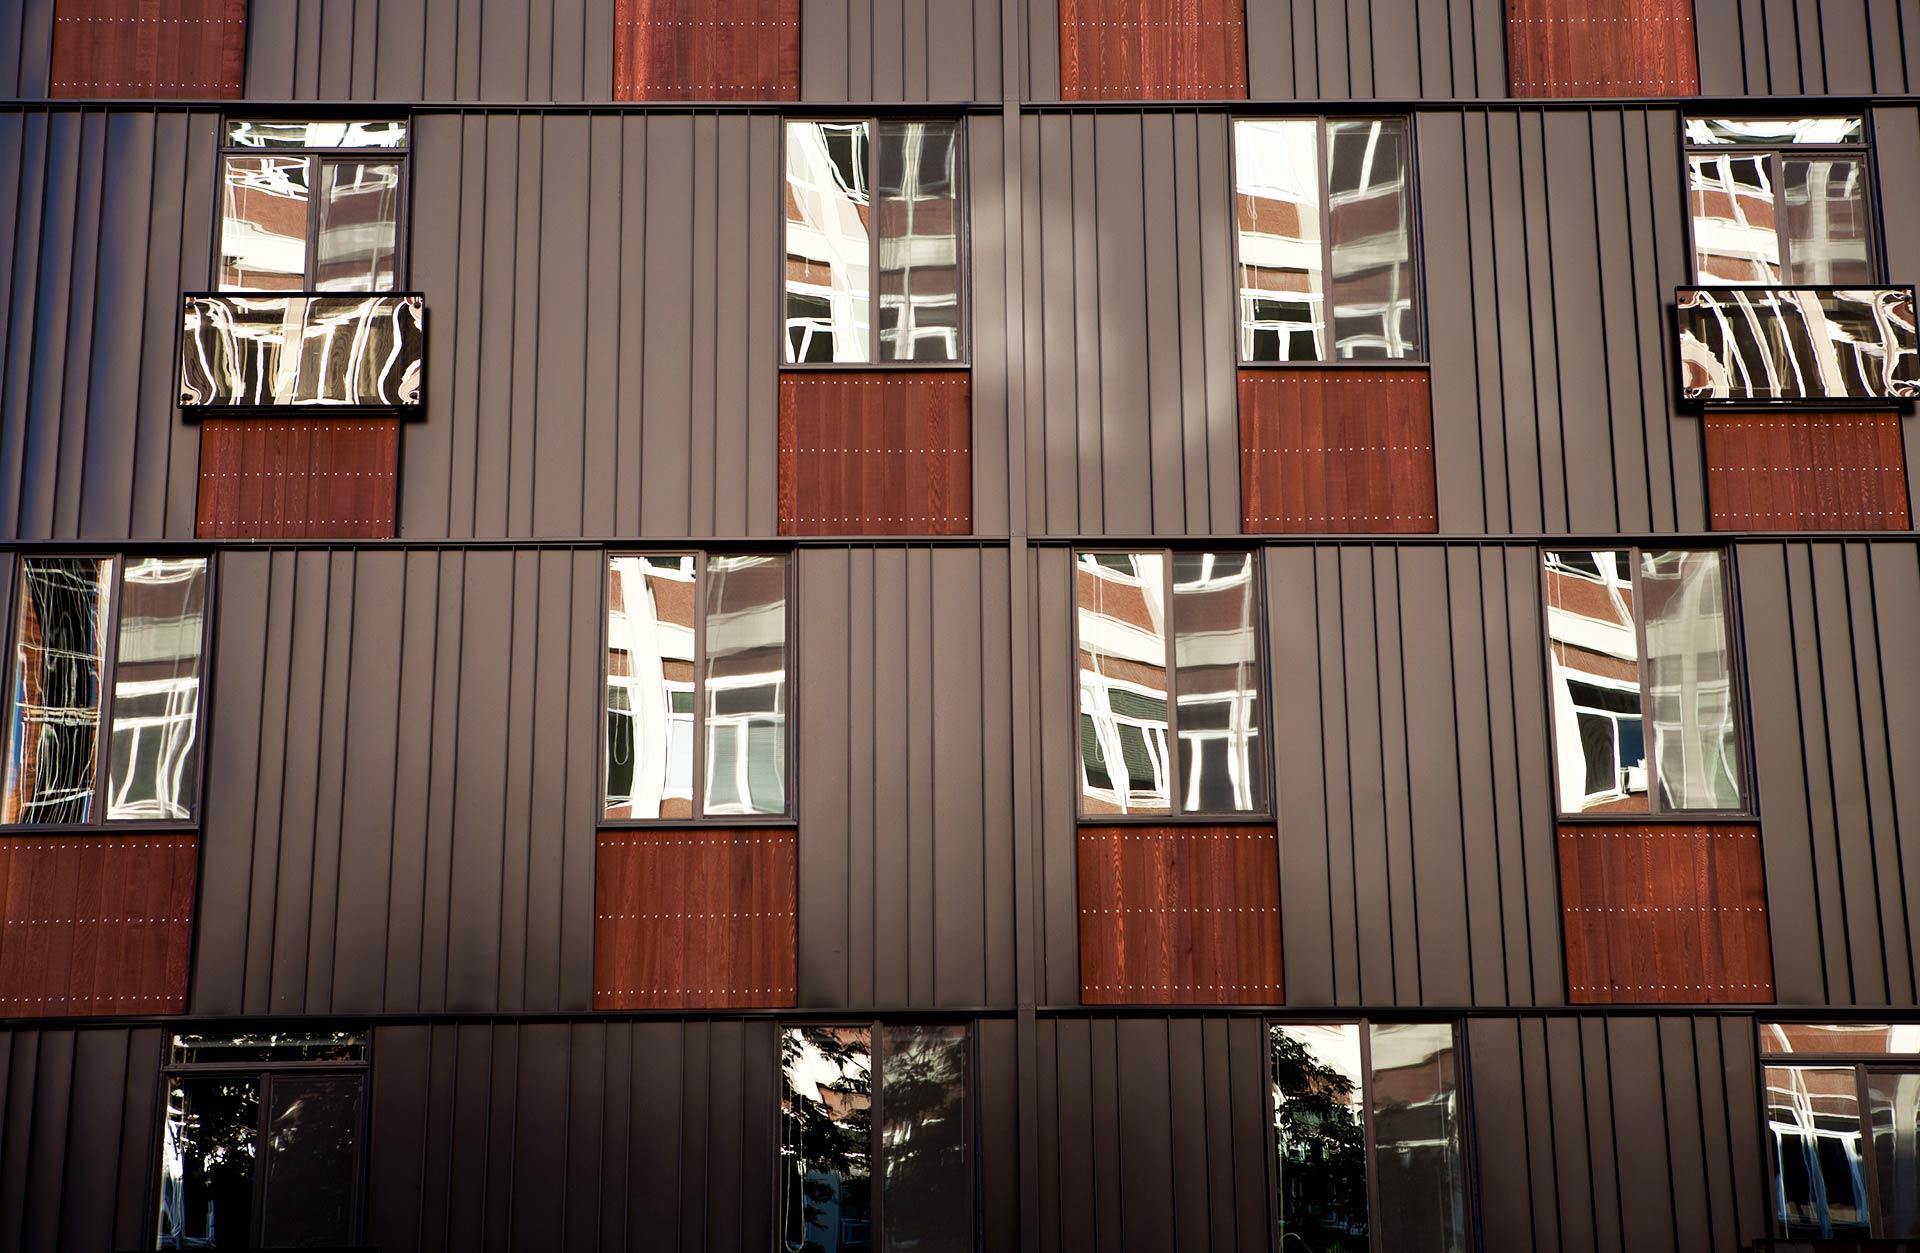 K-14 apartment exterior windows